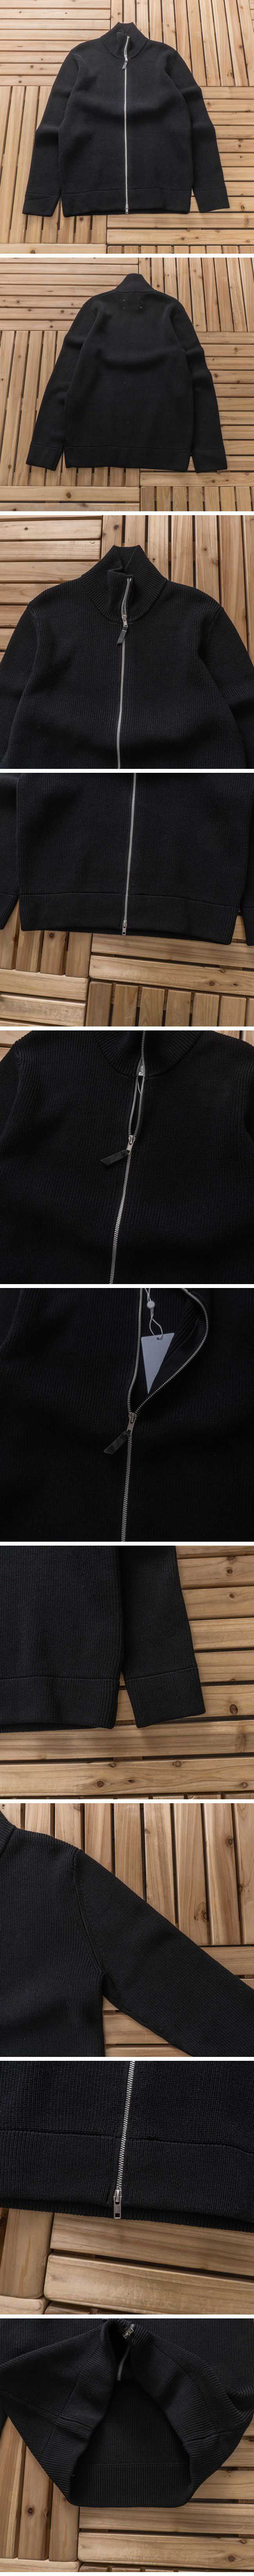 Balenciaga Zip-up Knit バレンシアガ ジップアップ ニット ジャケット